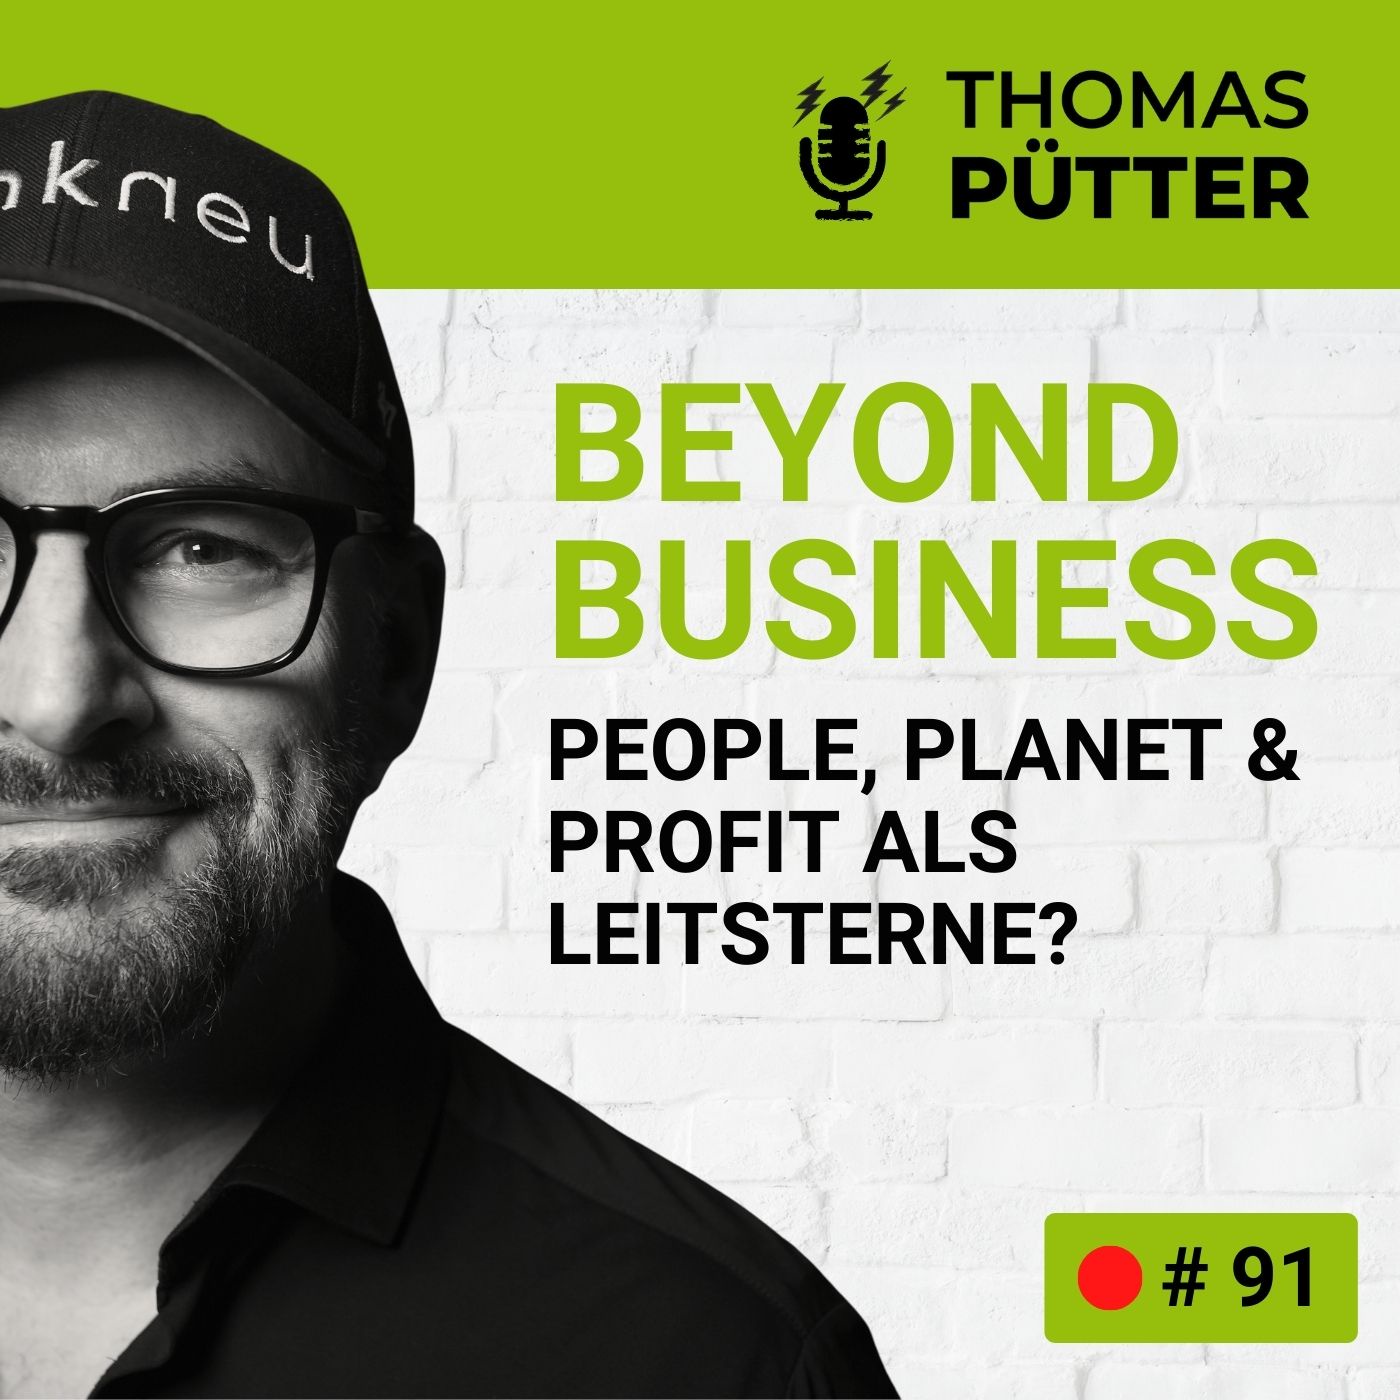 (91) Beyond Business: People, Planet & Profit als Leitsterne unternehmerischer Verantwortung